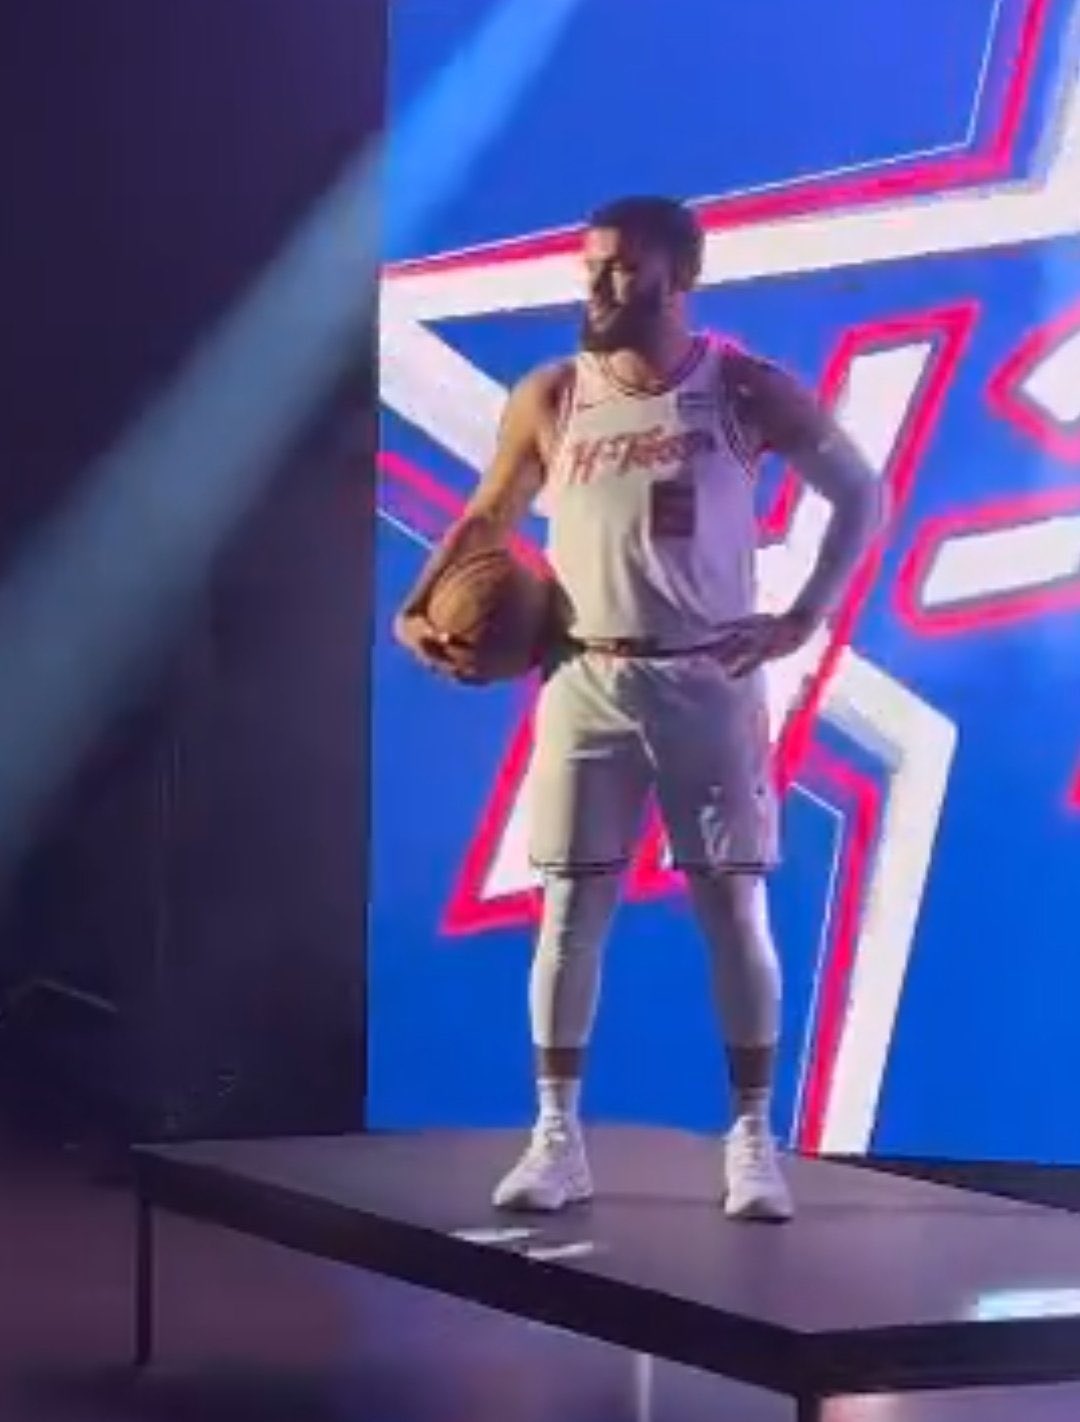 Camisas da NBA on X: Este é o provável uniforme City Edition do